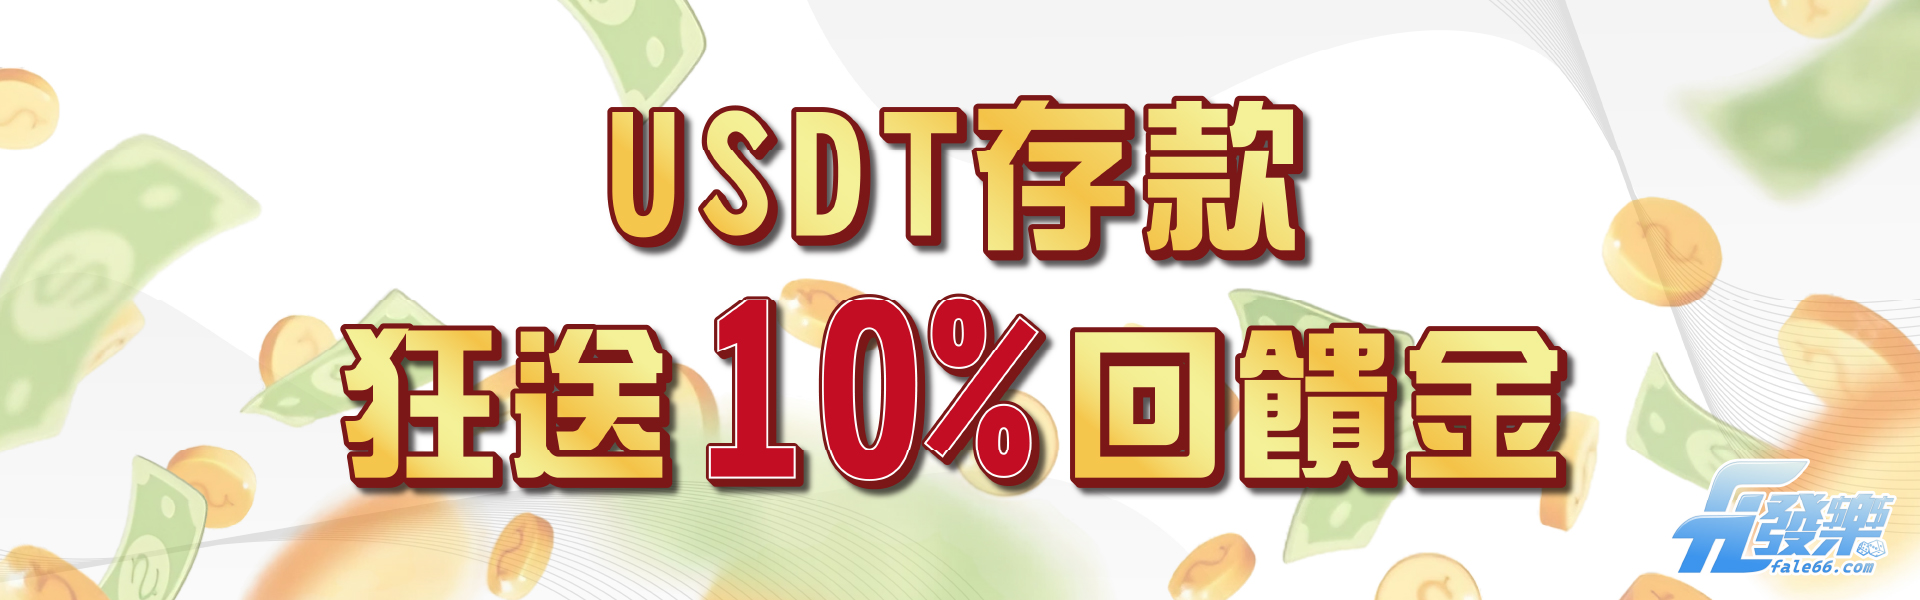 USDT虛擬貨幣儲值回饋10% !!